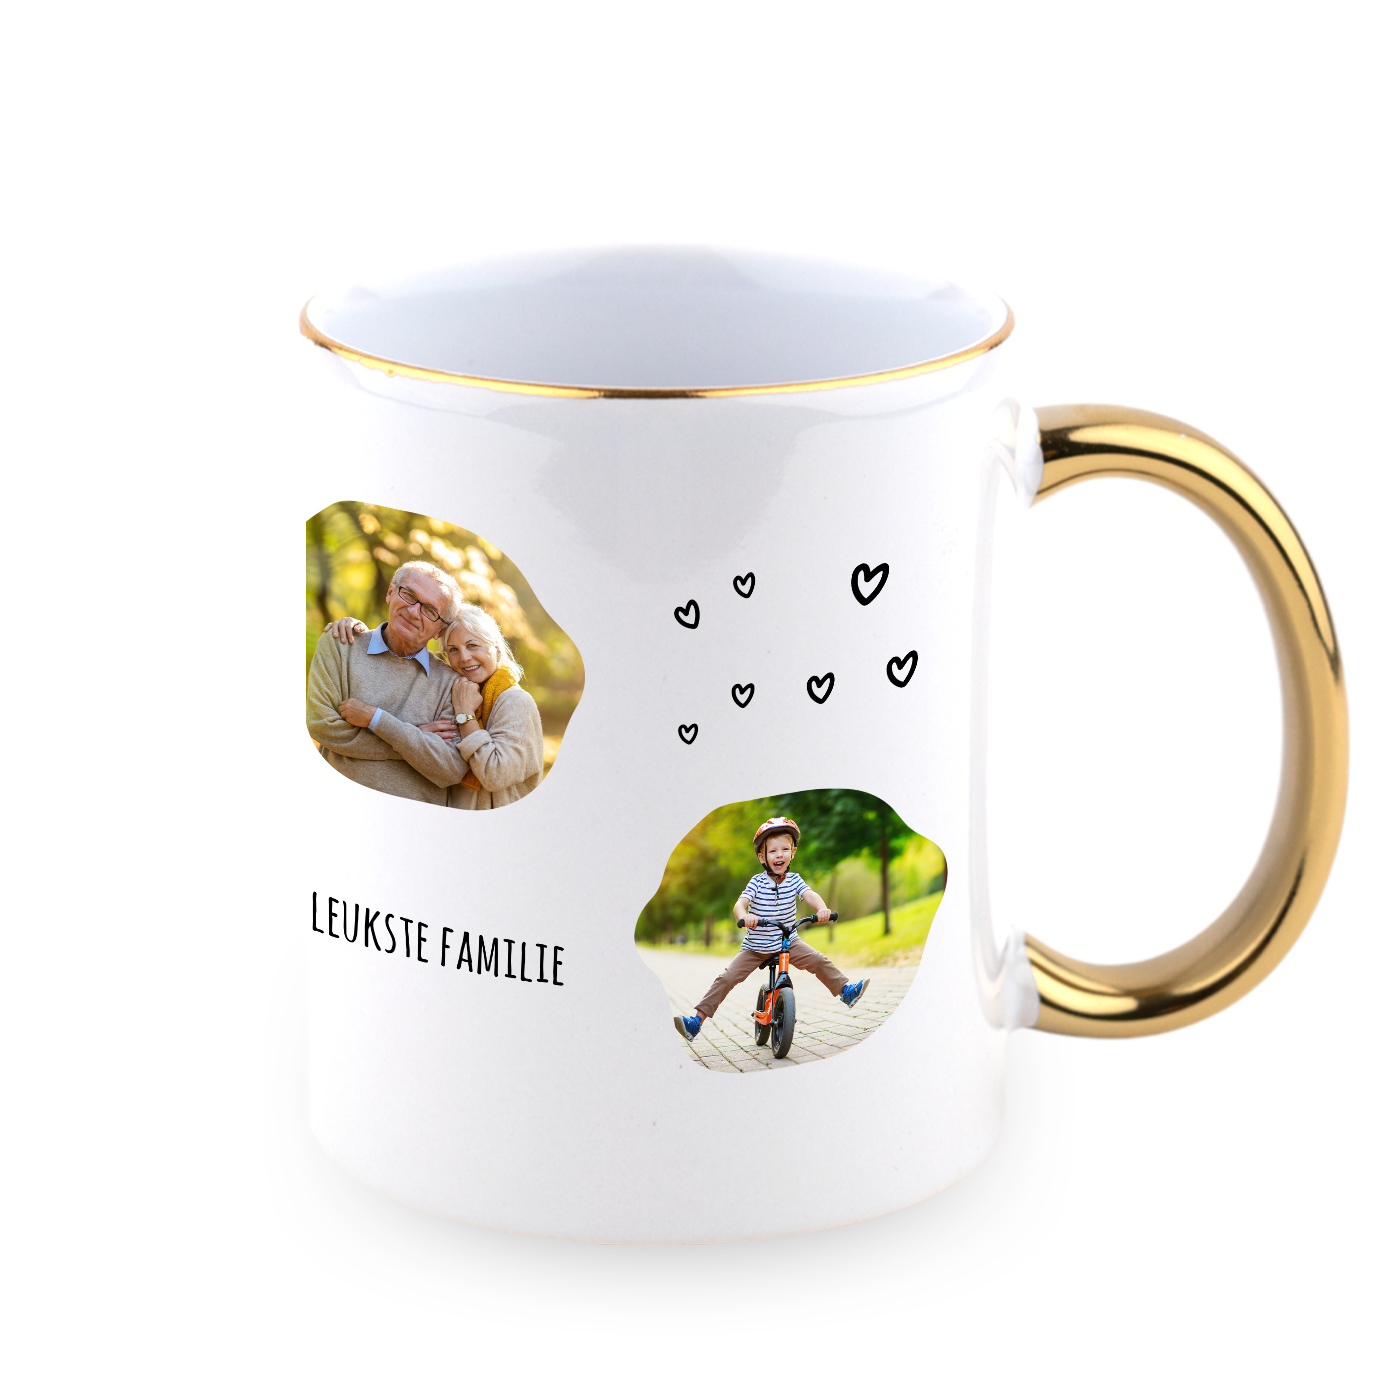 Luxury Personalised Mug